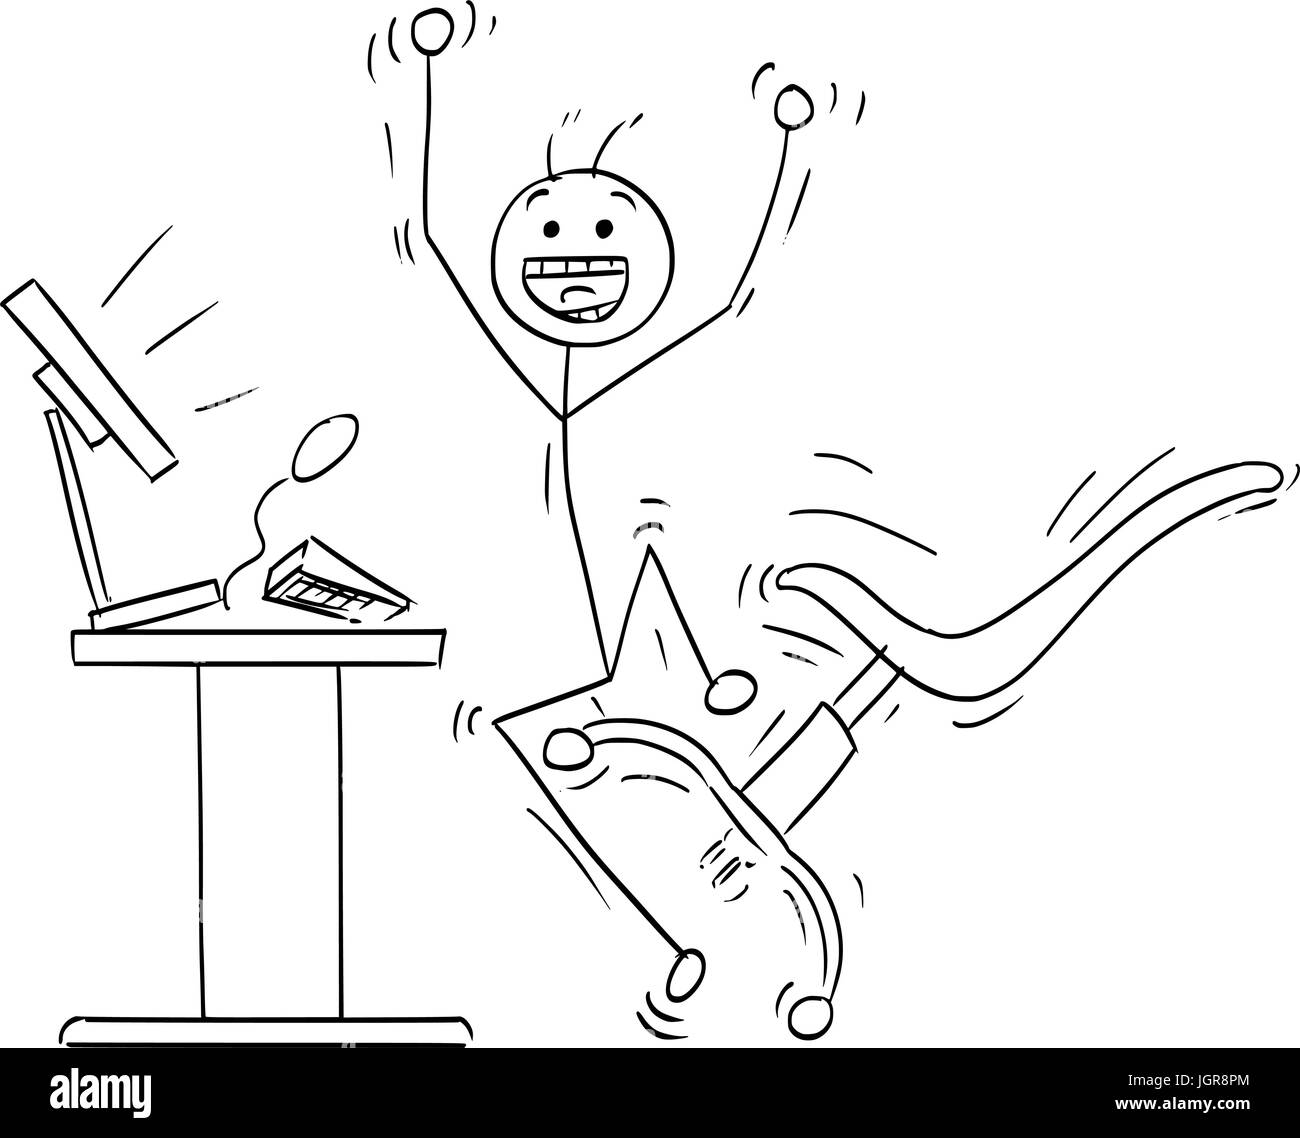 Cartoon Vector Stick Mann Stickman Zeichnung der glücklicher Mann vor dem Desktopcomputer zu springen, um einen Erfolg zu feiern. Bürostuhl, Tastatur und di Stock Vektor